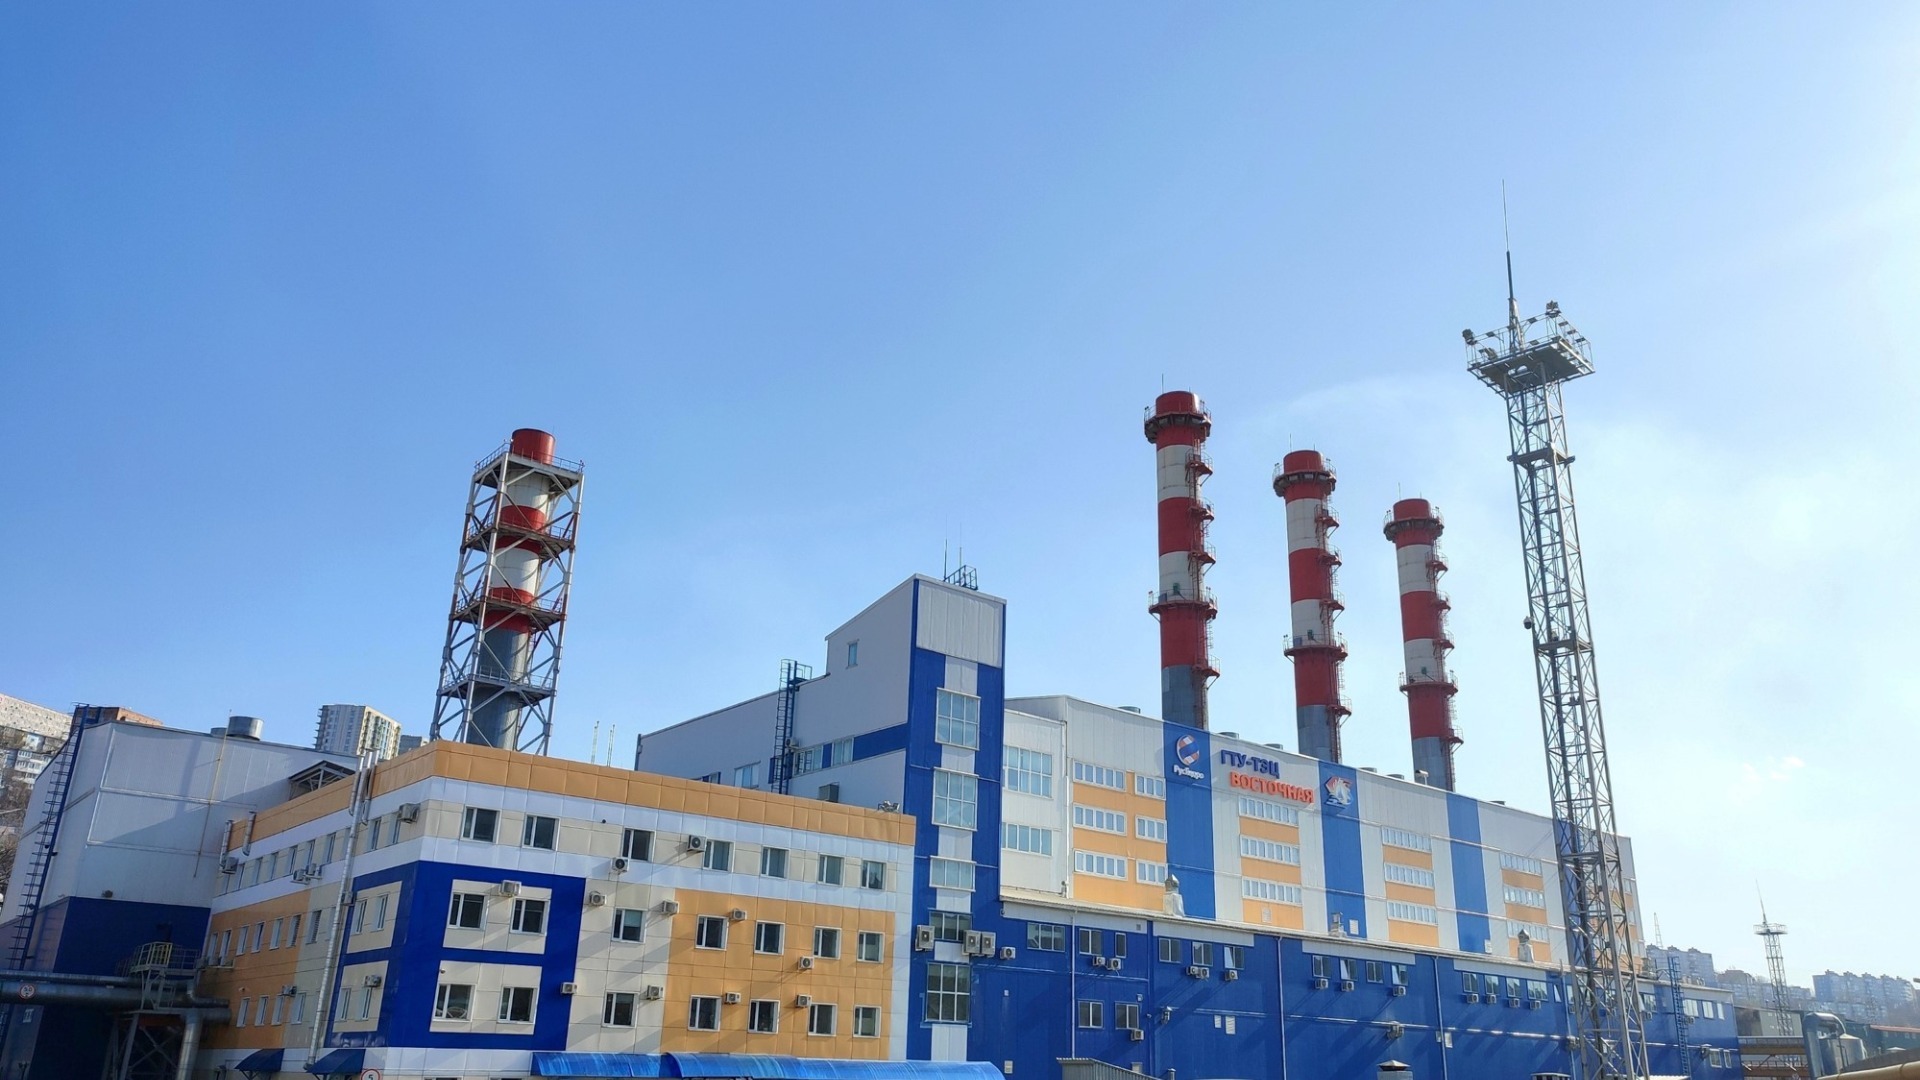 Приморские энергопредприятия ДГК к прохождению отопительного сезона готовы